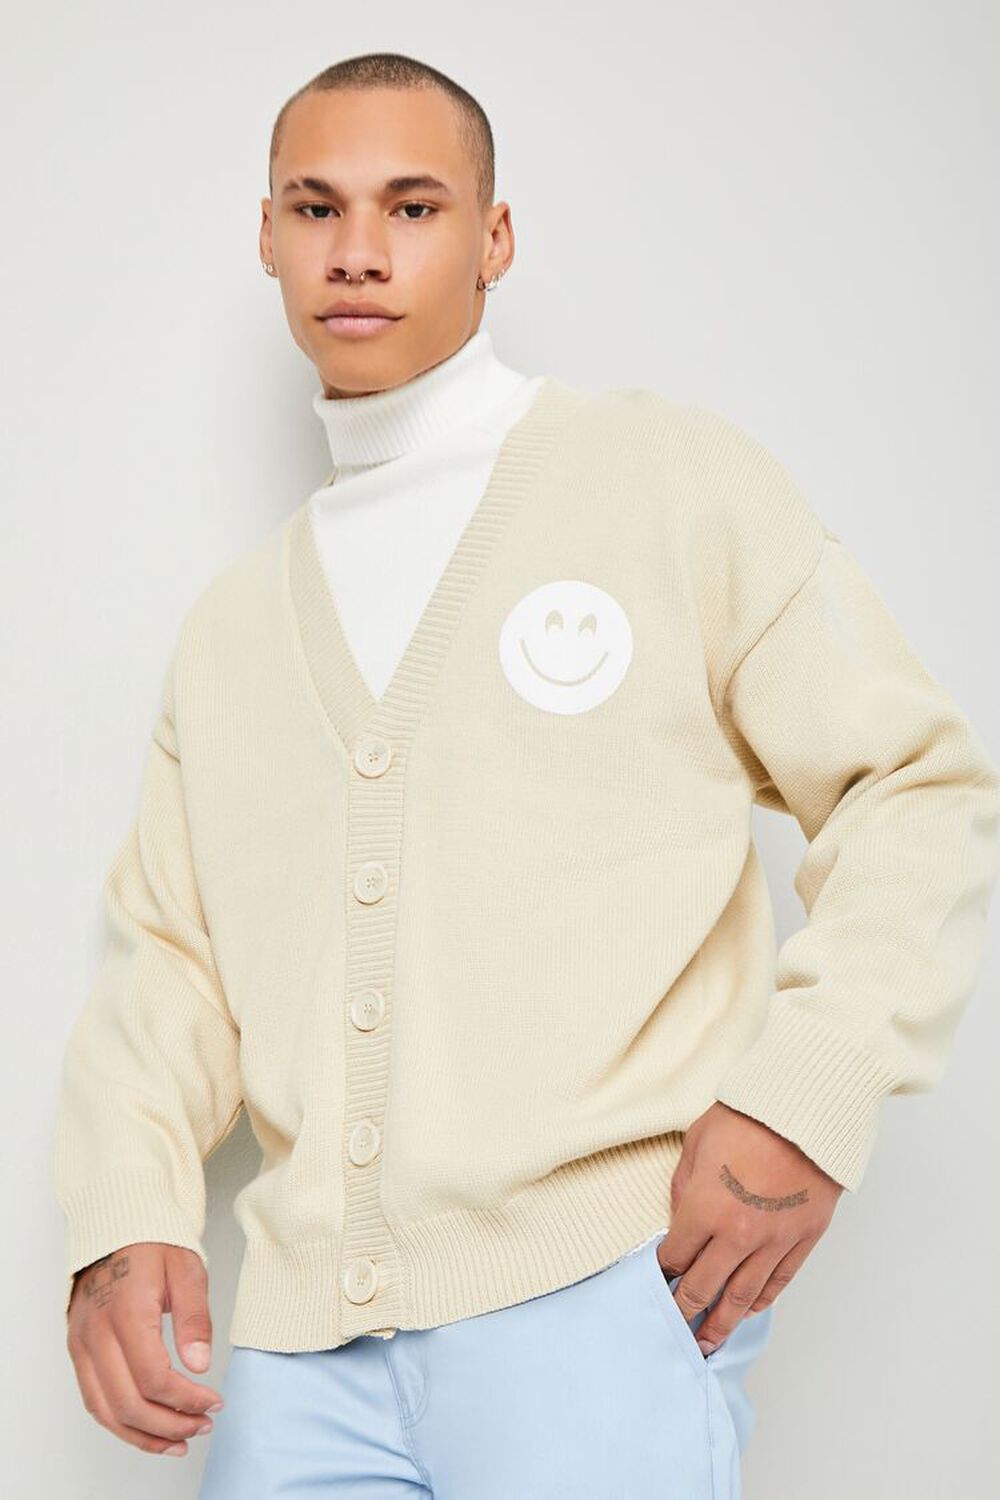 KHAKI/WHITE Happy Face Cardigan Sweater, image 1